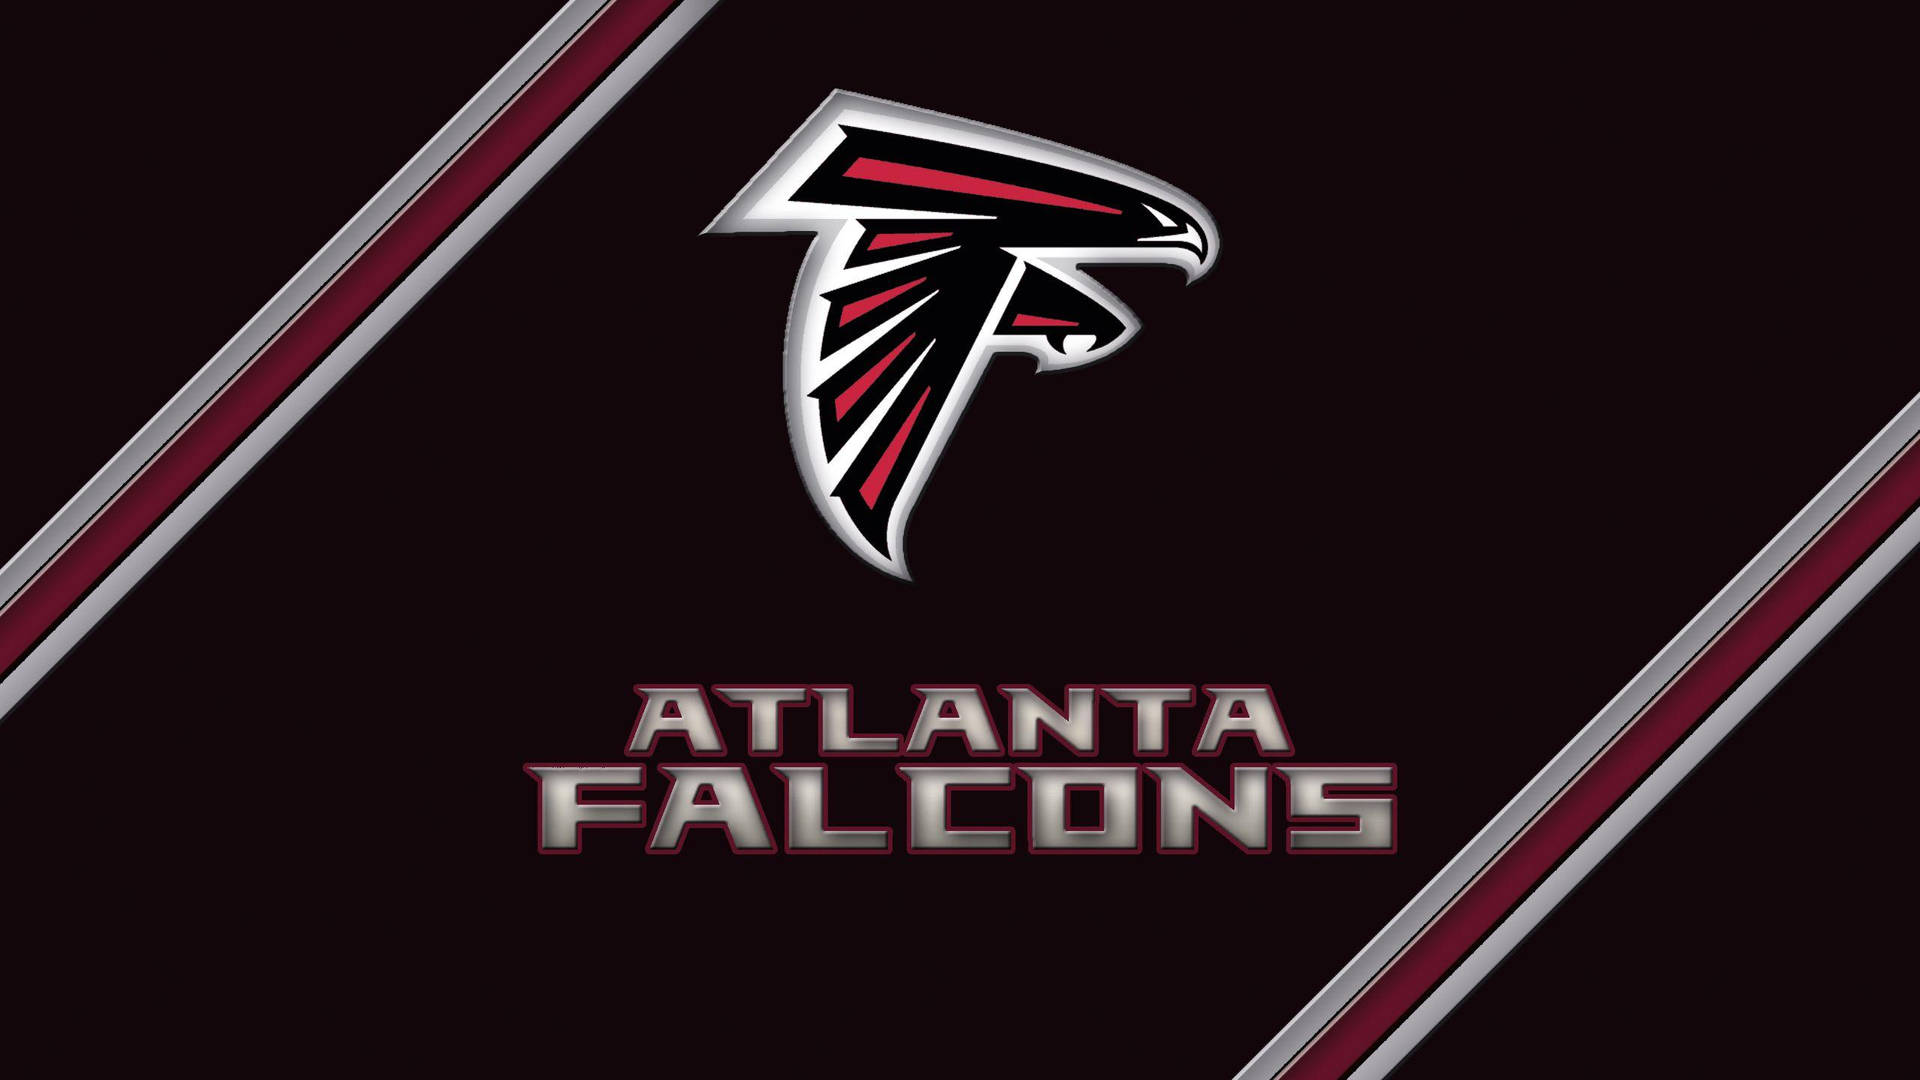 Atlantafalcons Logo Med Text Wallpaper